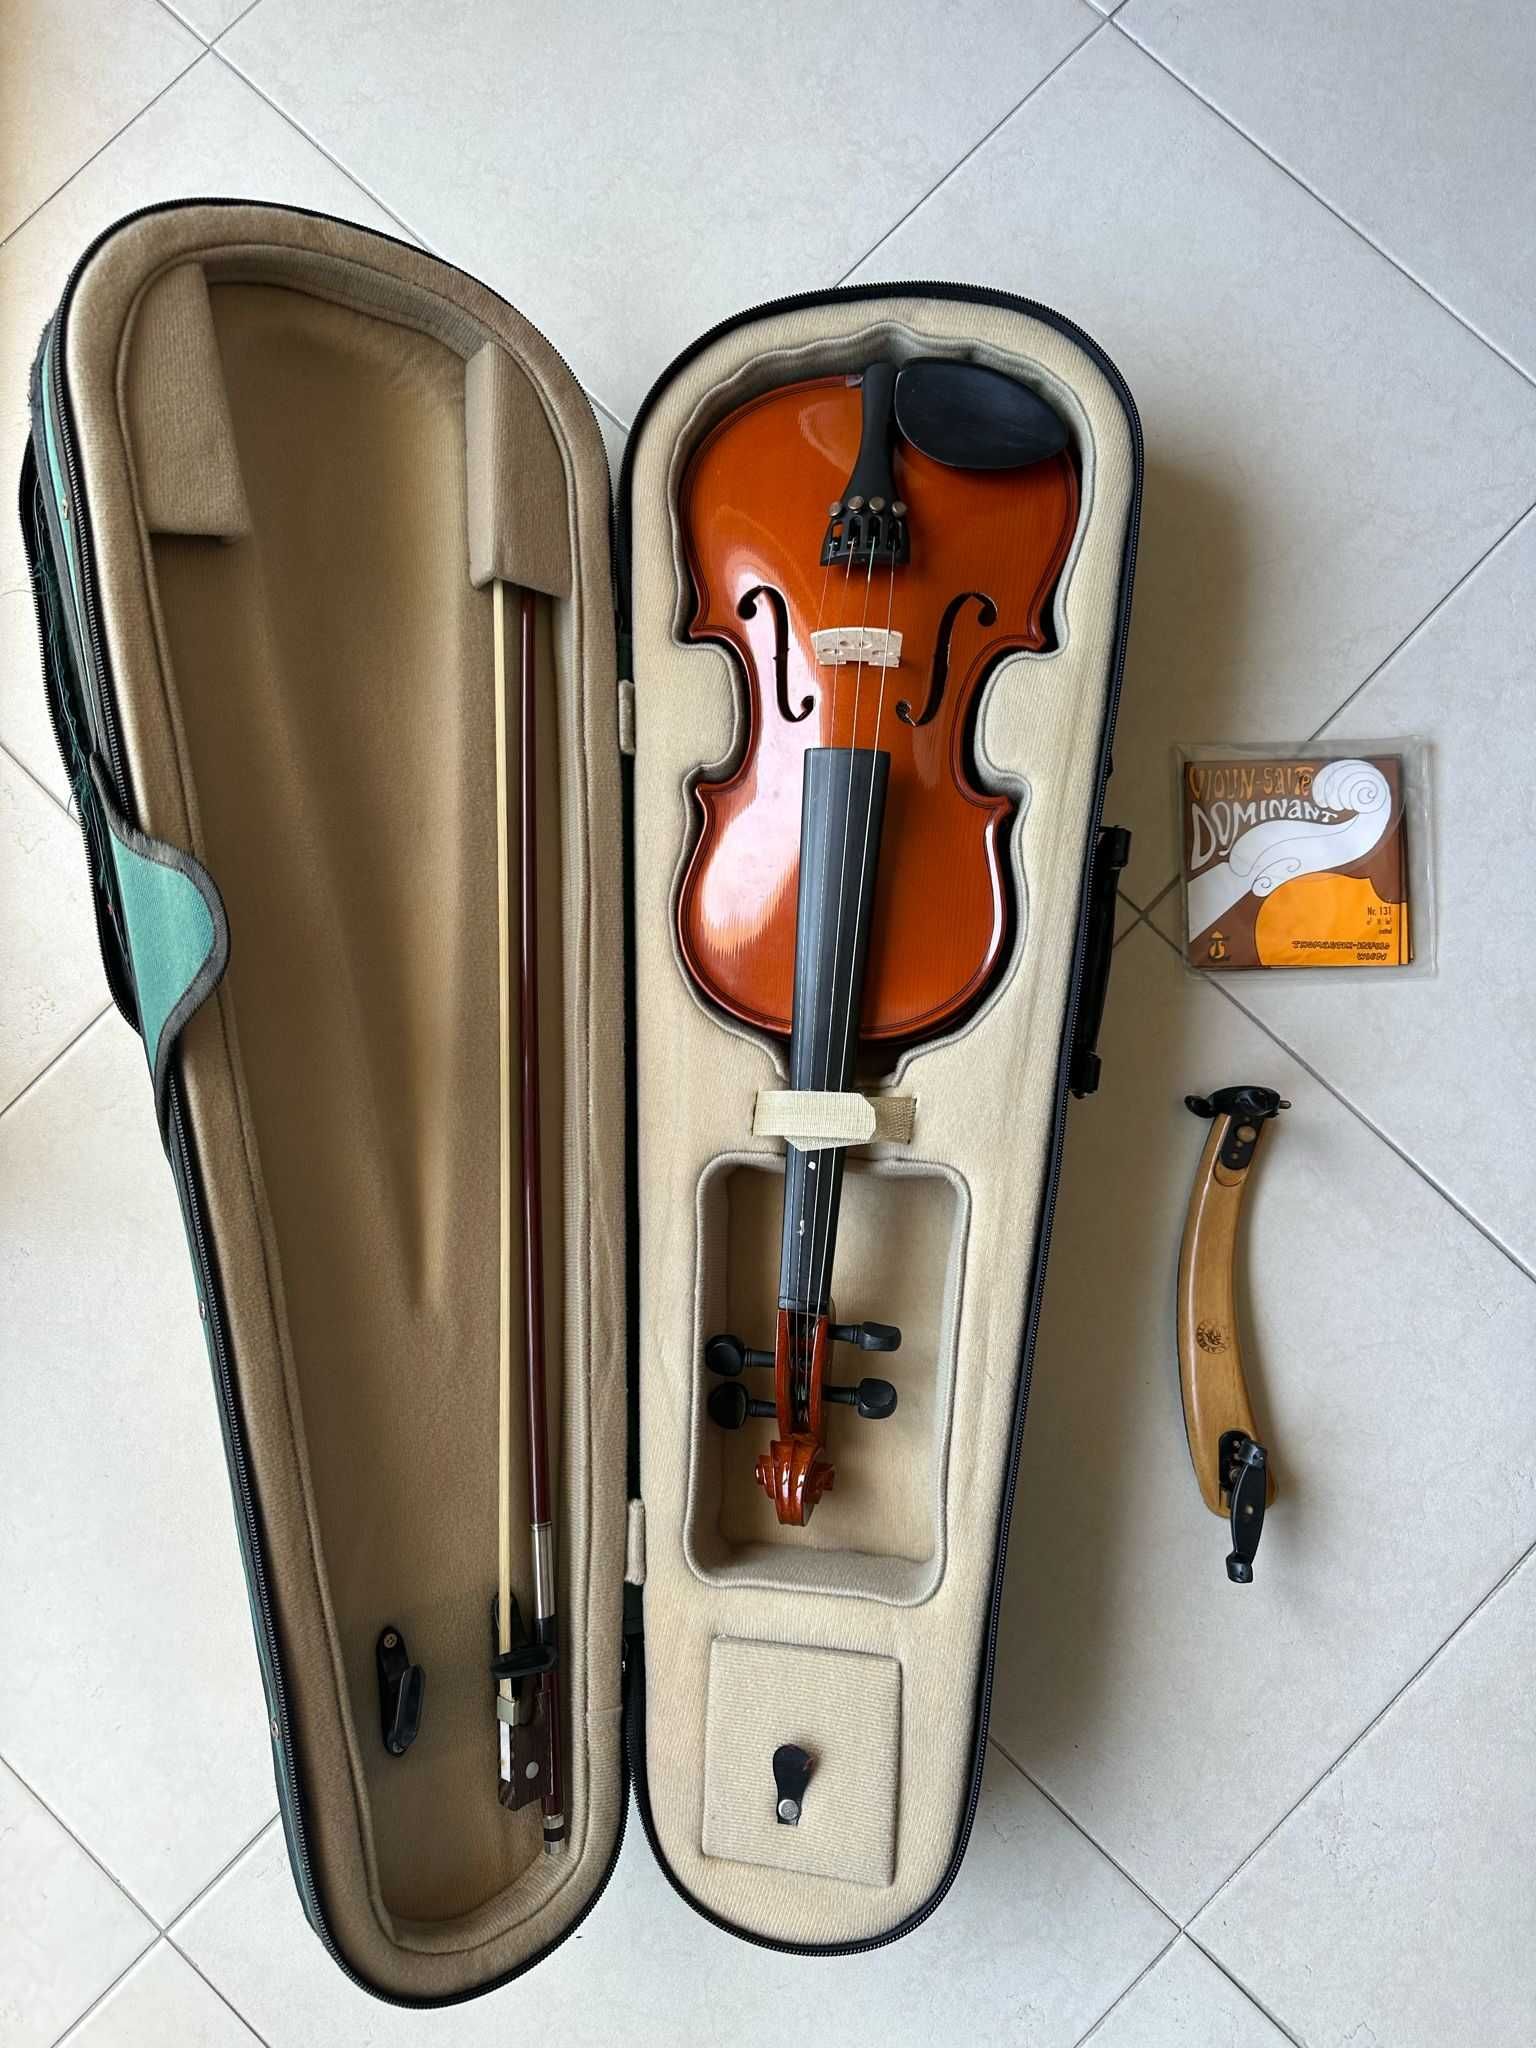 Violino, muito bem conservado